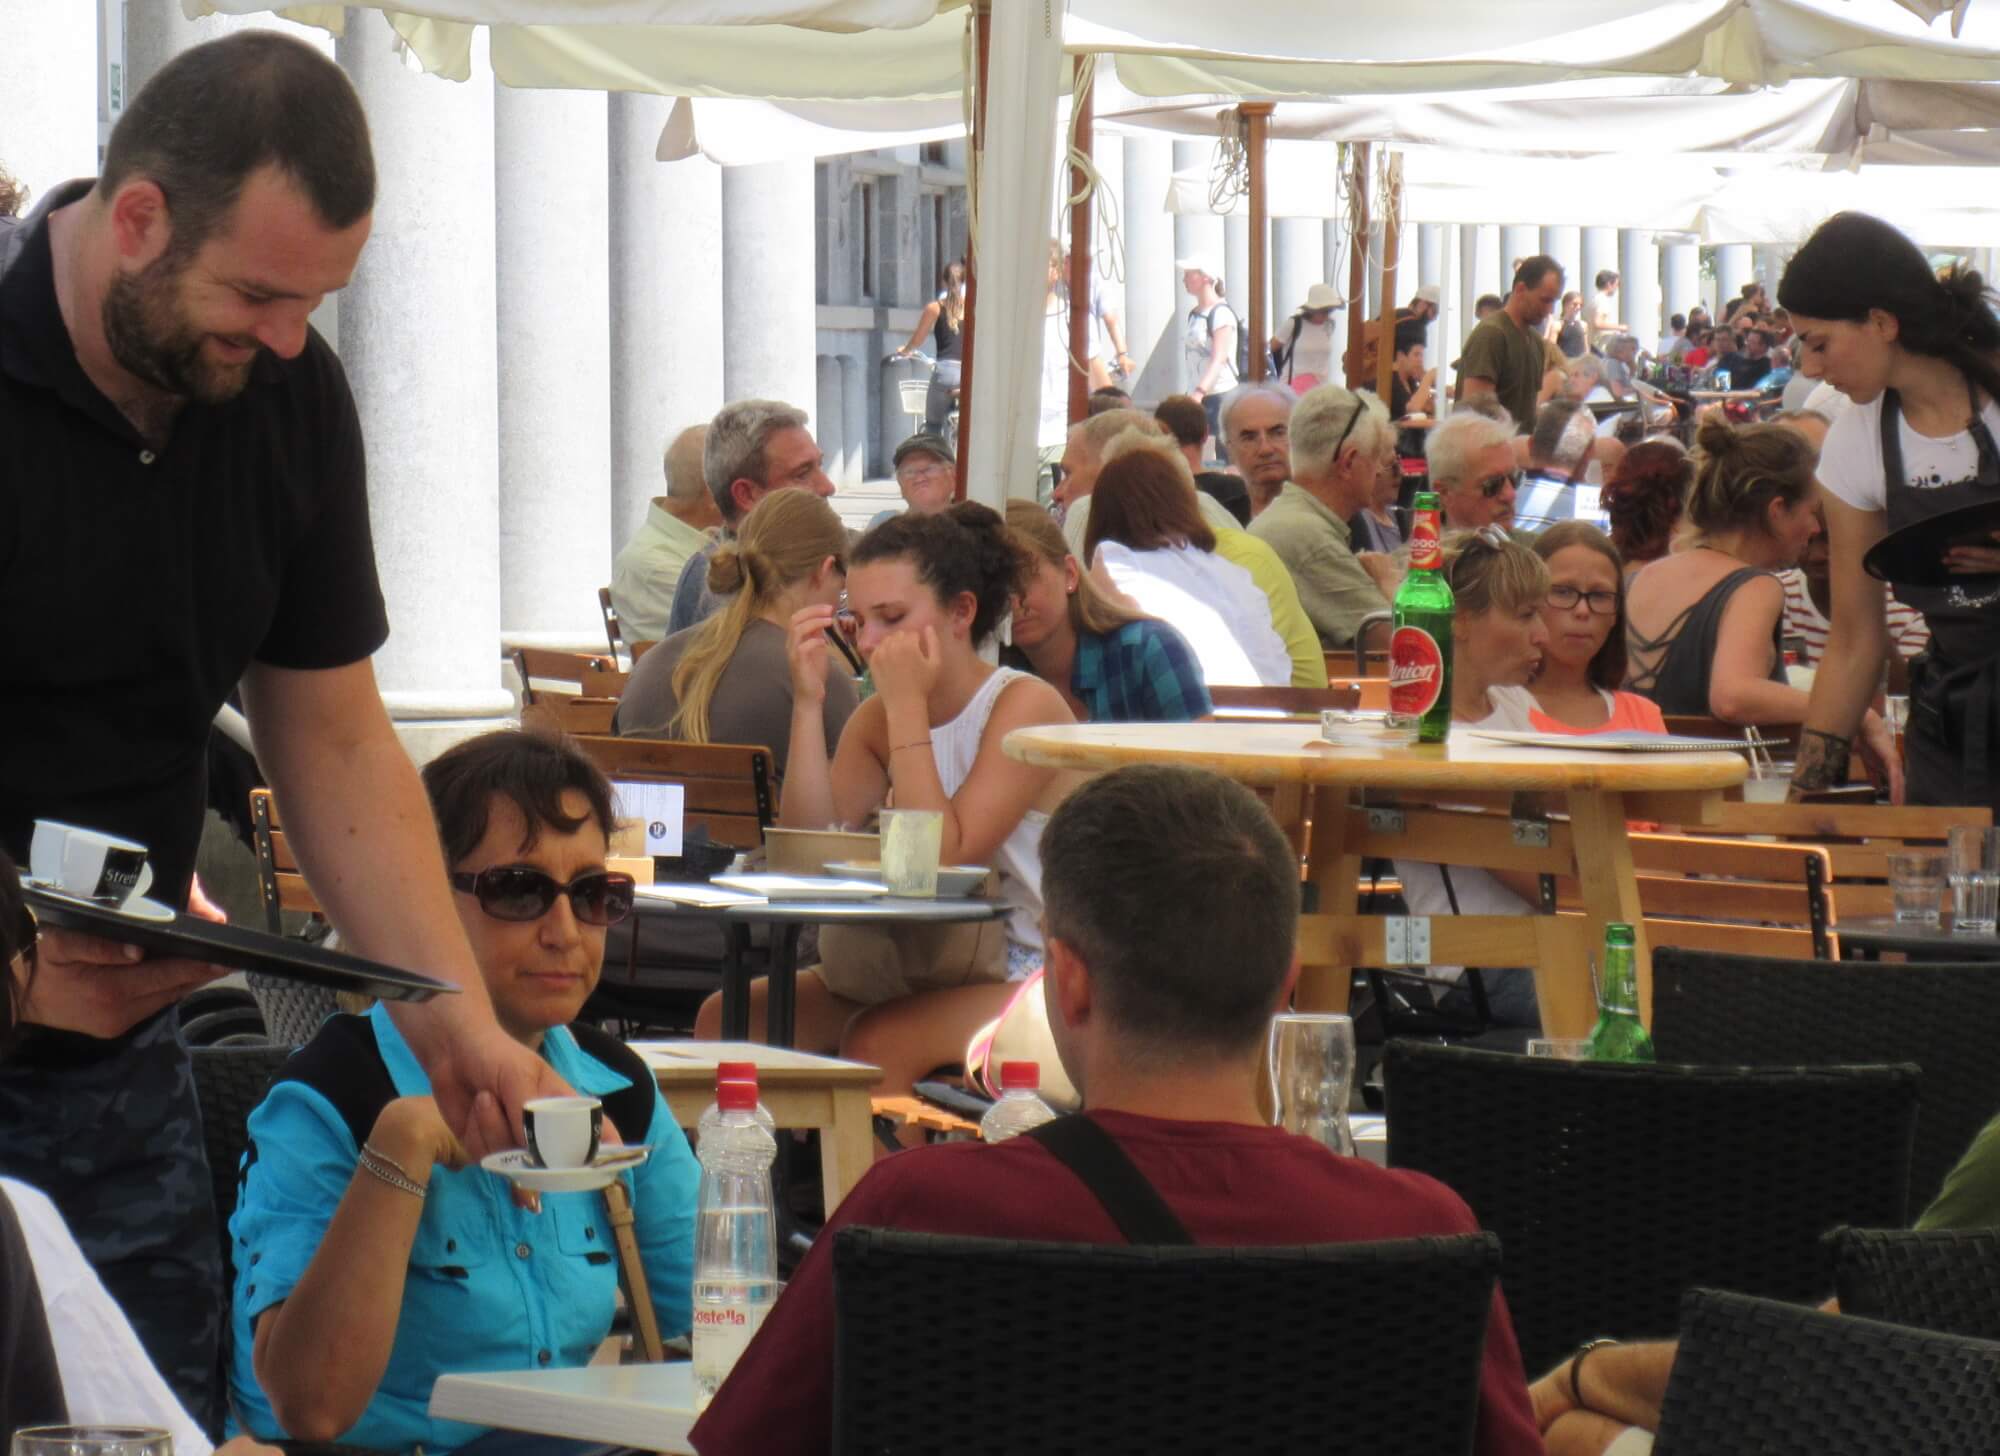 Ljubljana Central Market tourists cafe summer.jpg